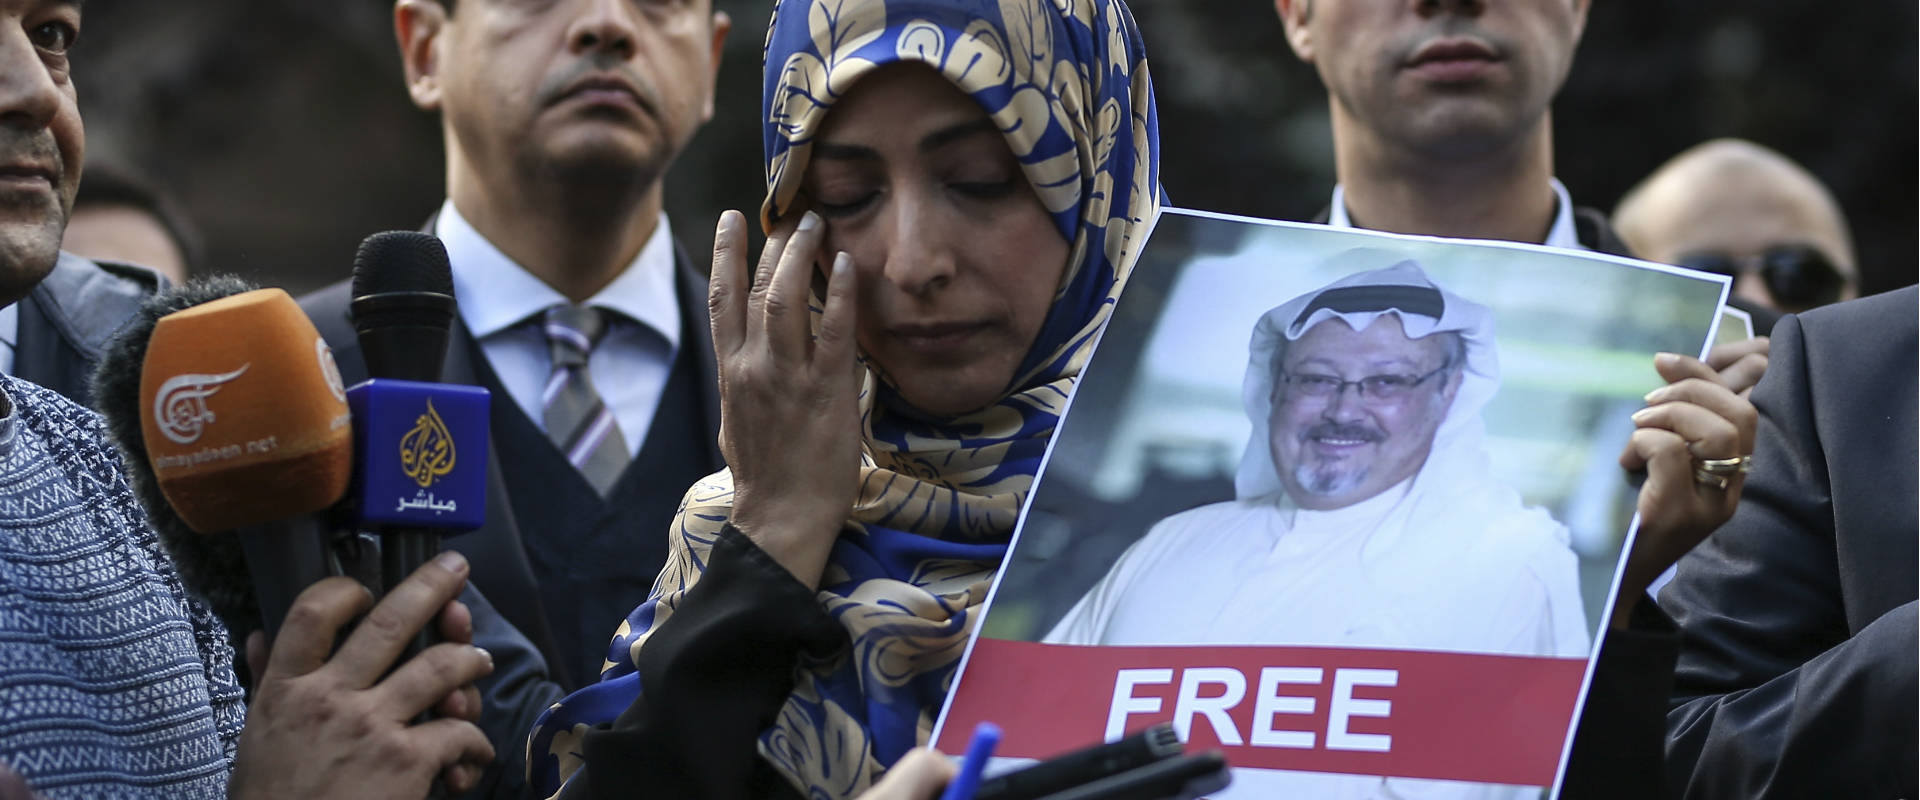 הפגנות בעקבות היעלמות העיתונאי הסעודי